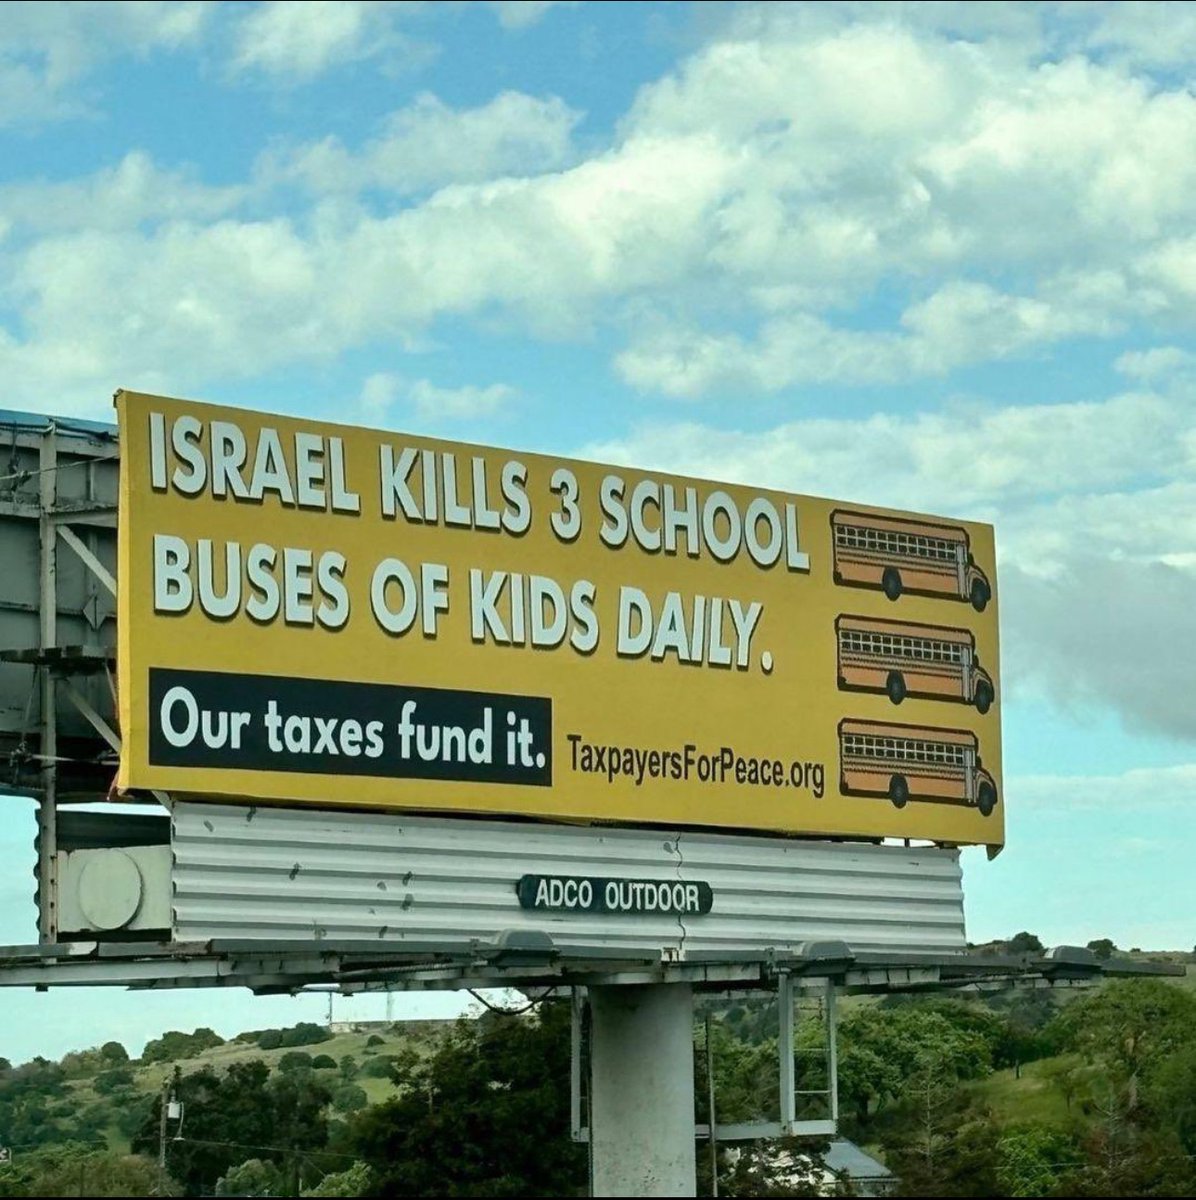 ISRAEL KILLS 3 SCHOOL BUSES OF KIDS DAILY